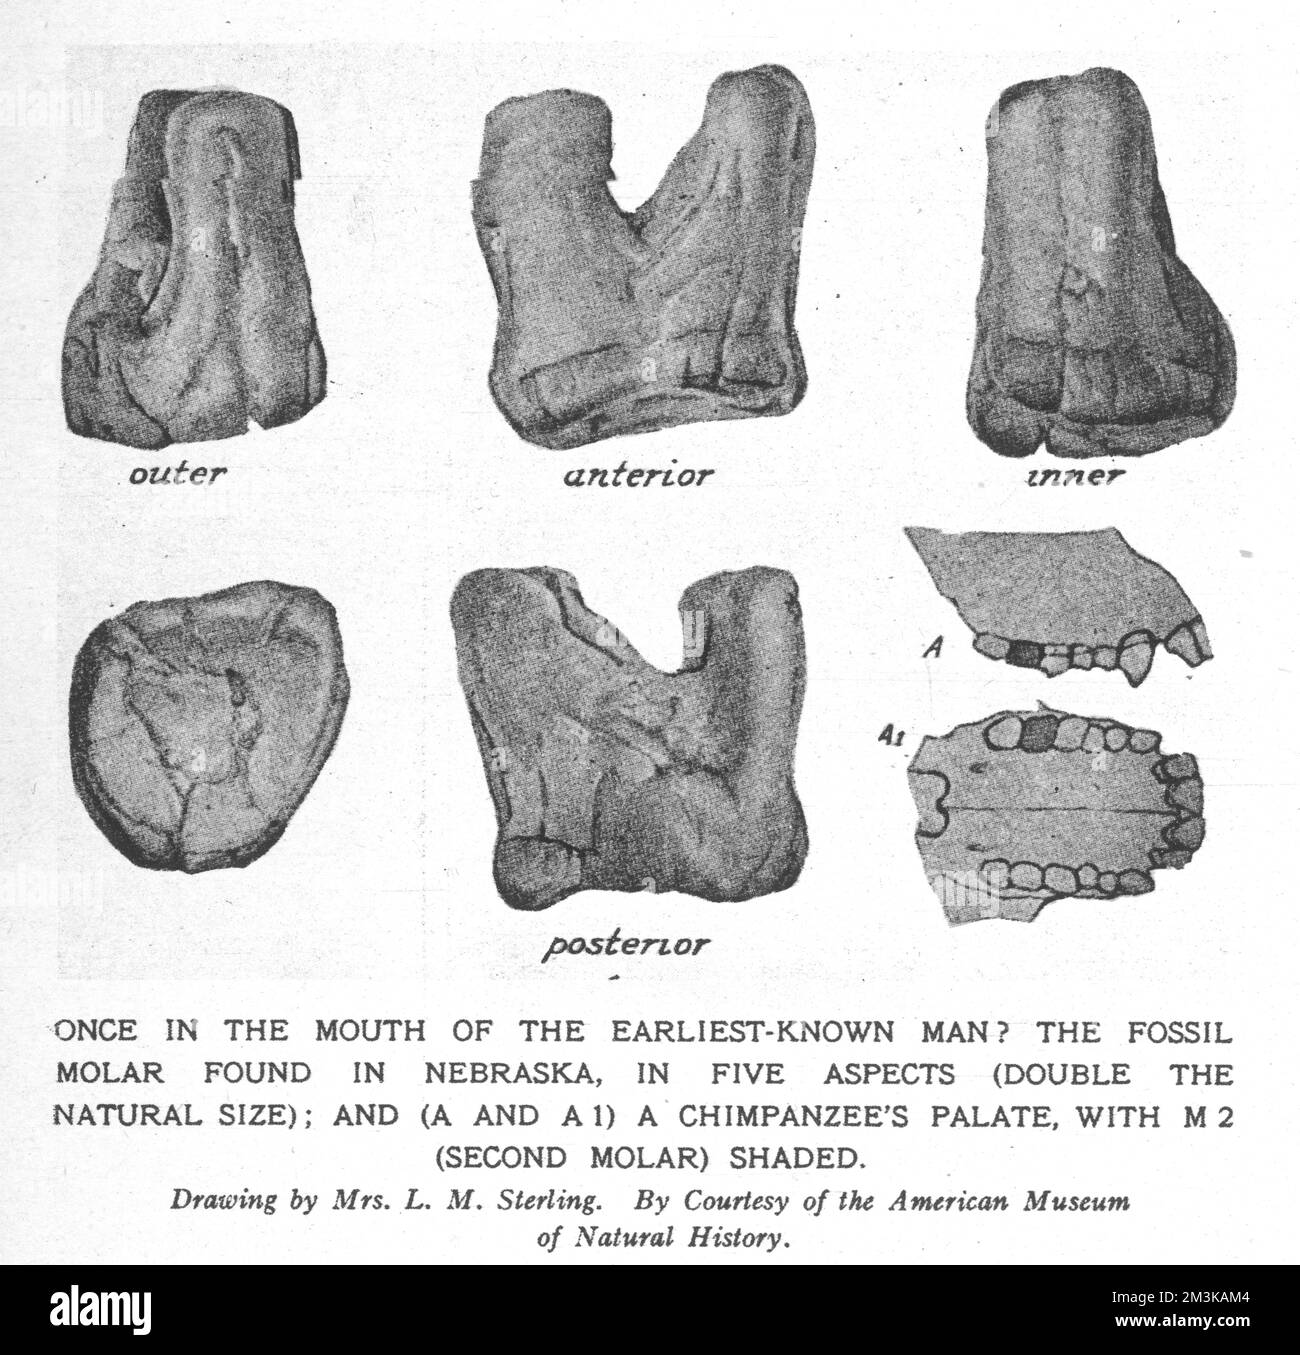 Disegno di un molare fossile trovato in Nebraska, creduto appartenere all'uomo in anticipo - hesperopithecus (Ape-Man del mondo occidentale). Data: Pre-cronologia Foto Stock